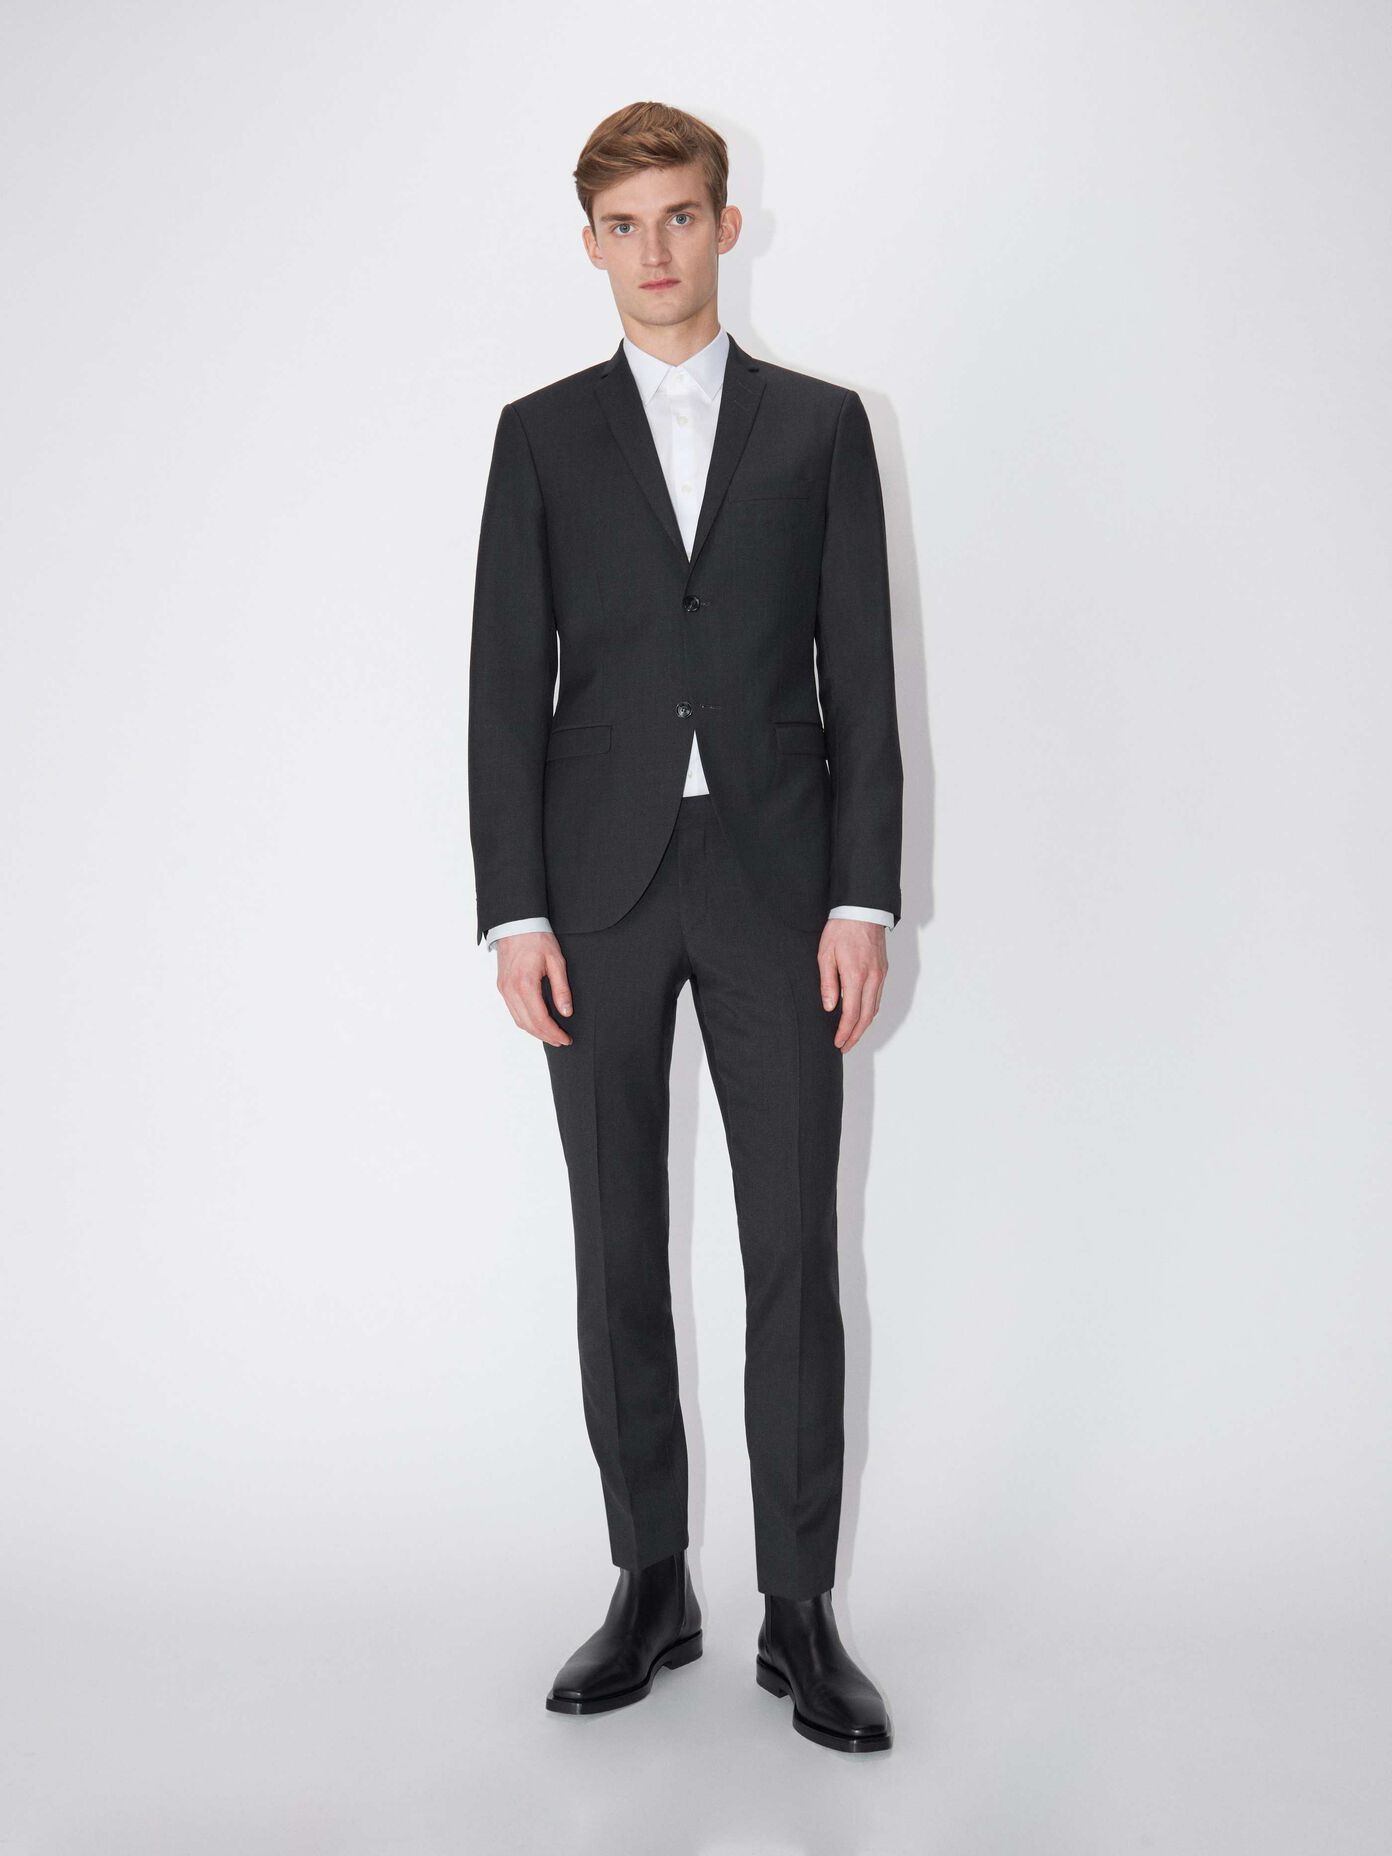 Suits - Find quality designer suits online at Tiger of Sweden